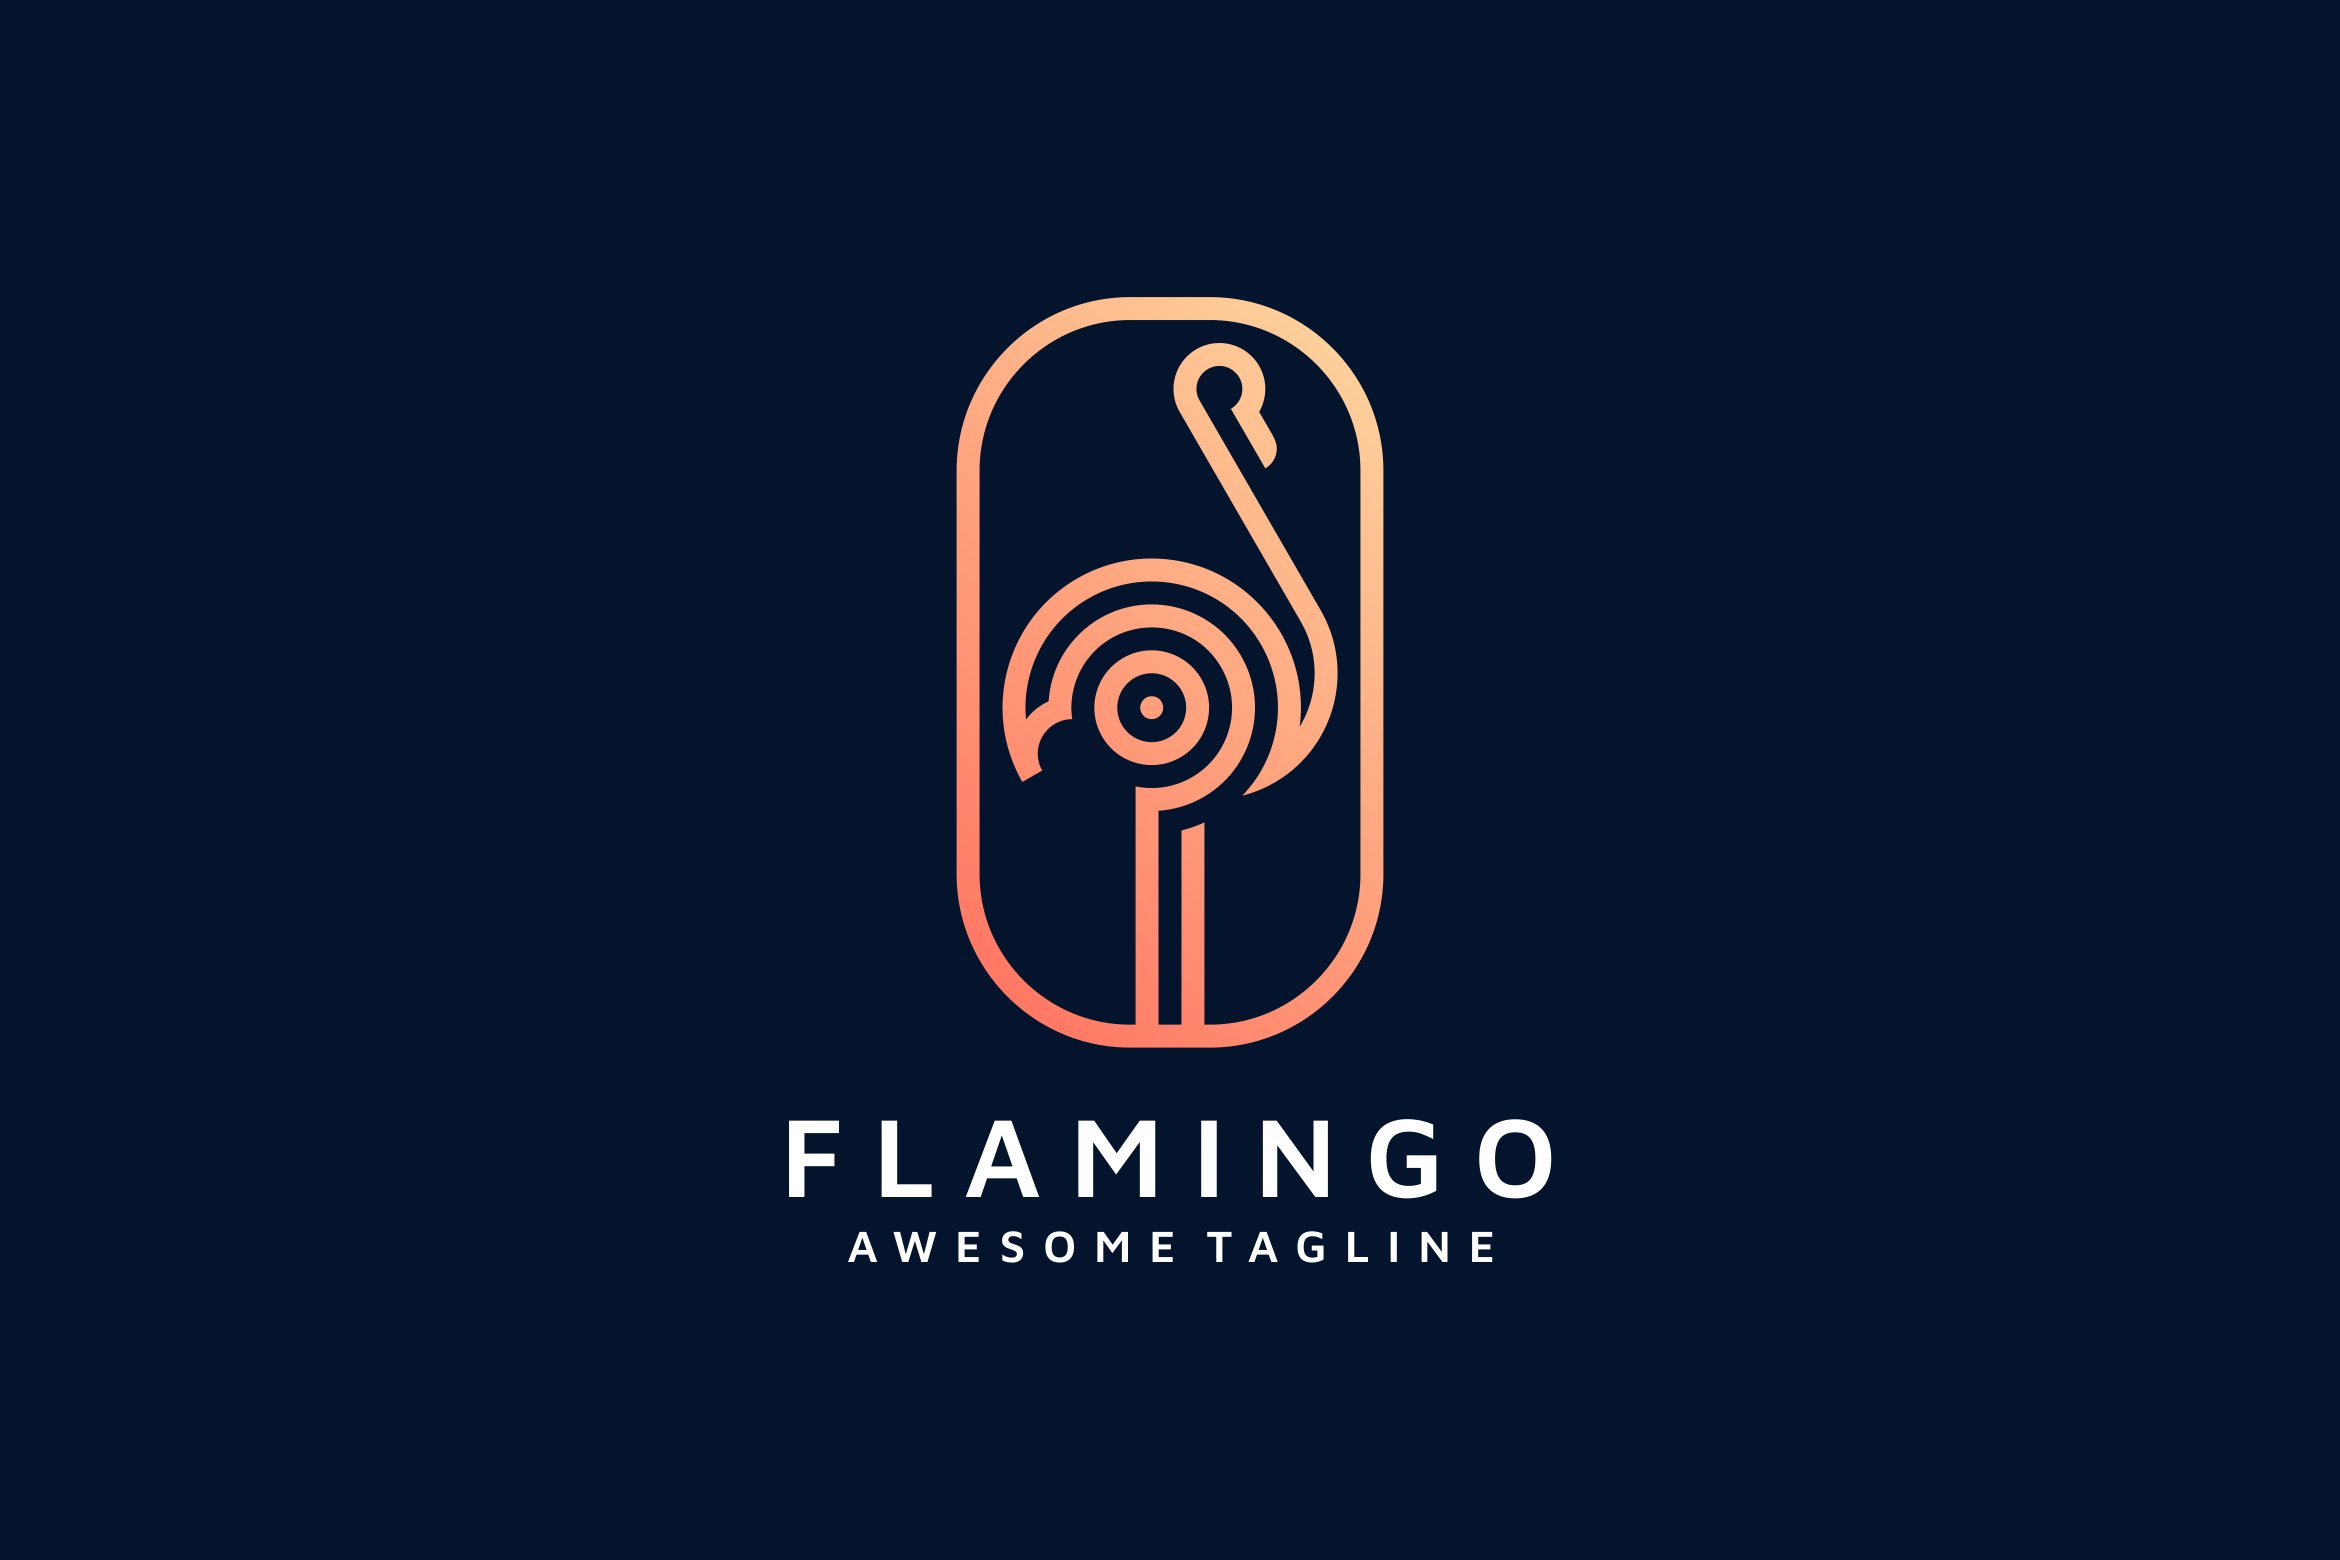 FLAMINGO LINE ART LOGO TEMPLATE cover image.